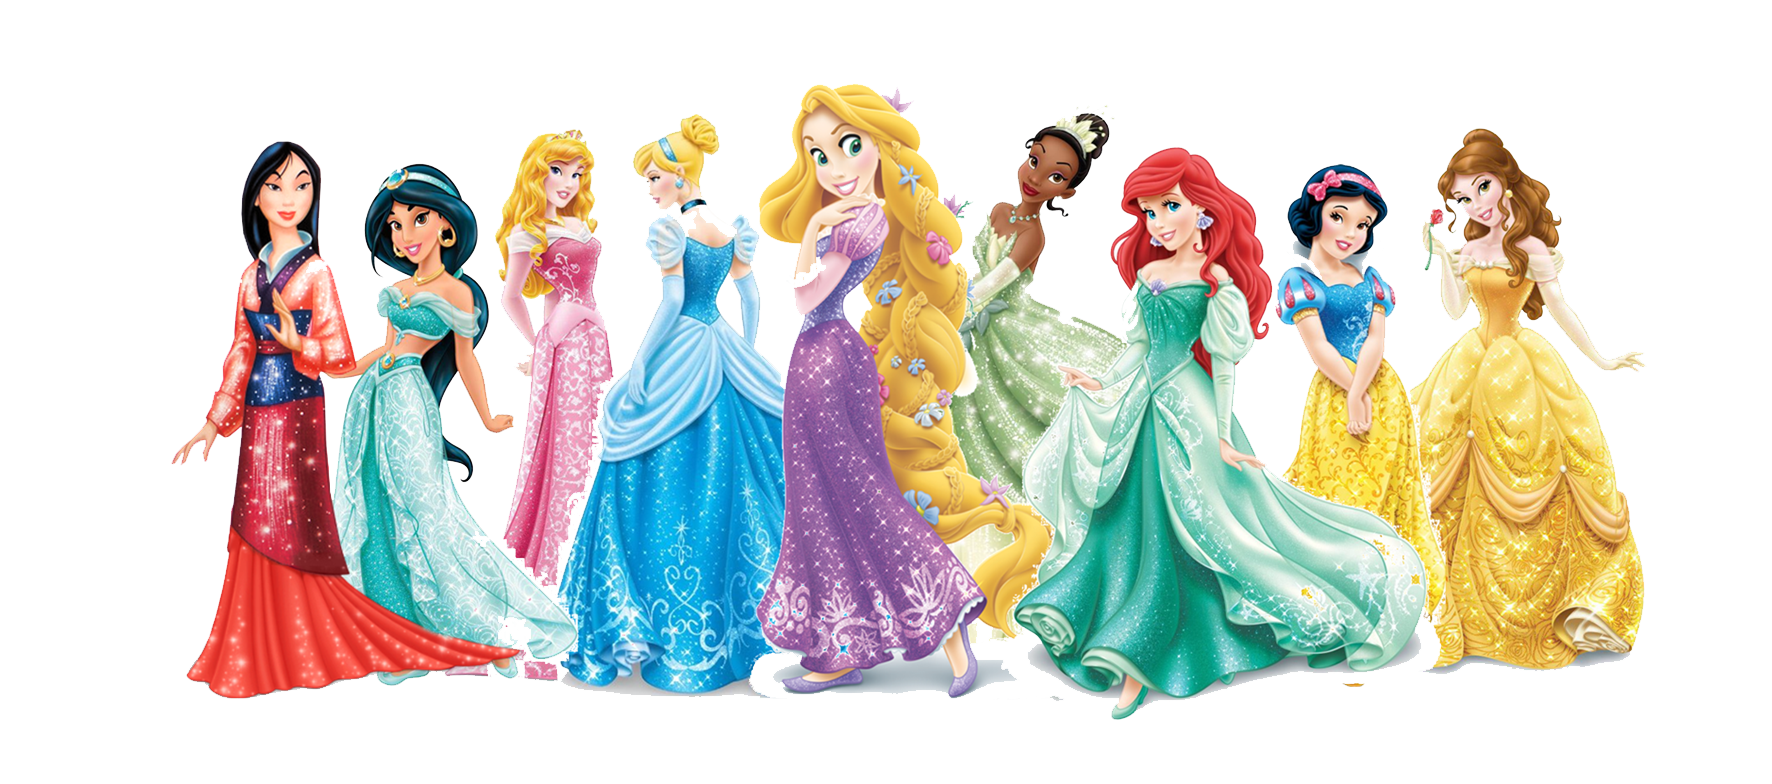 Disney Princesses PNG in Transparent pngteam.com